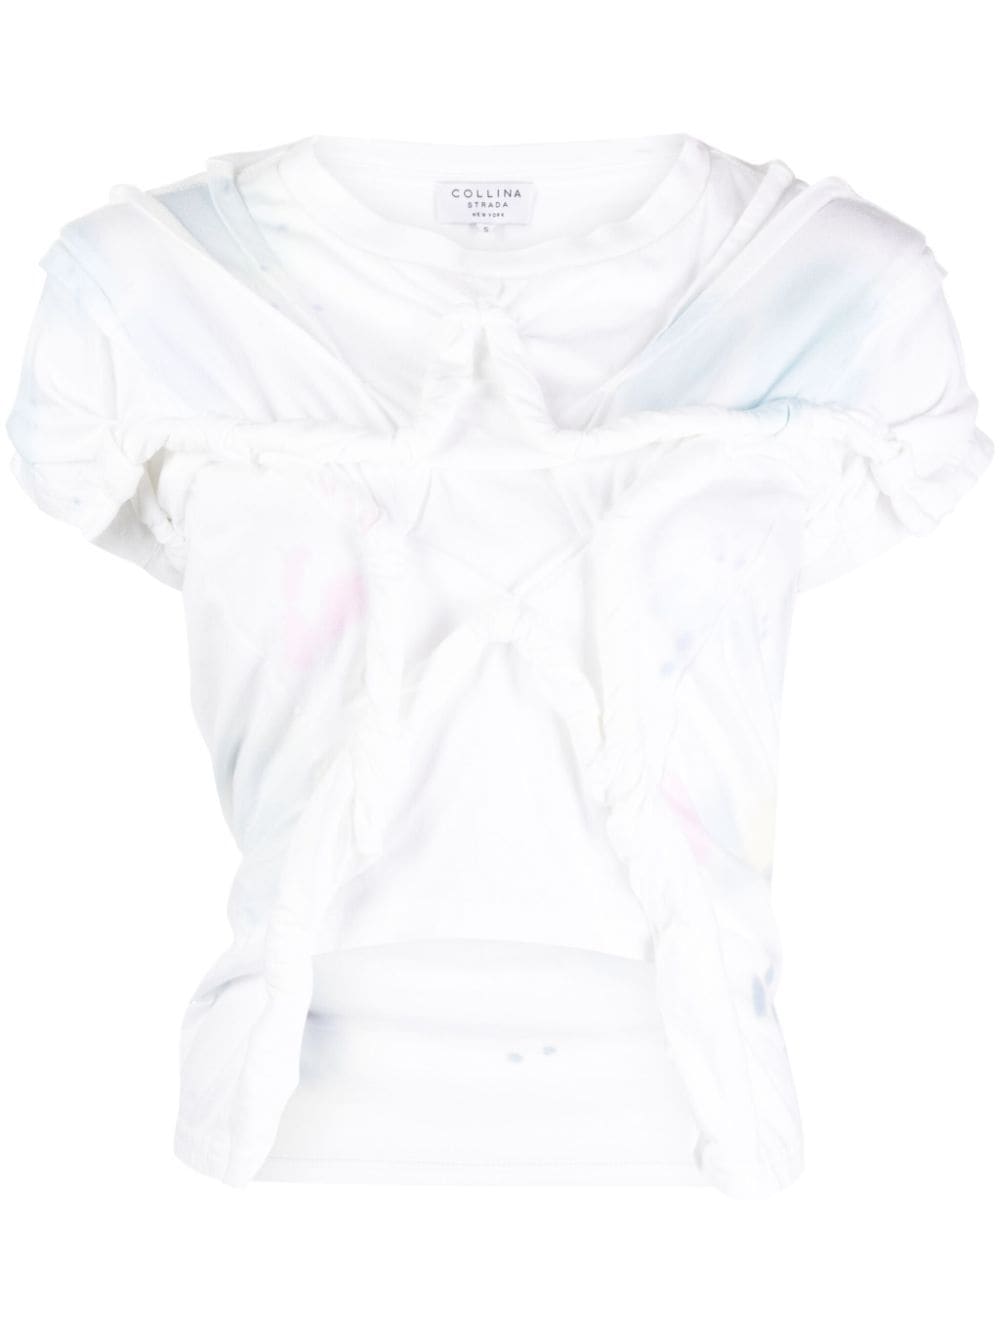 Collina Strada Verdrehtes Star T-Shirt - Weiß von Collina Strada